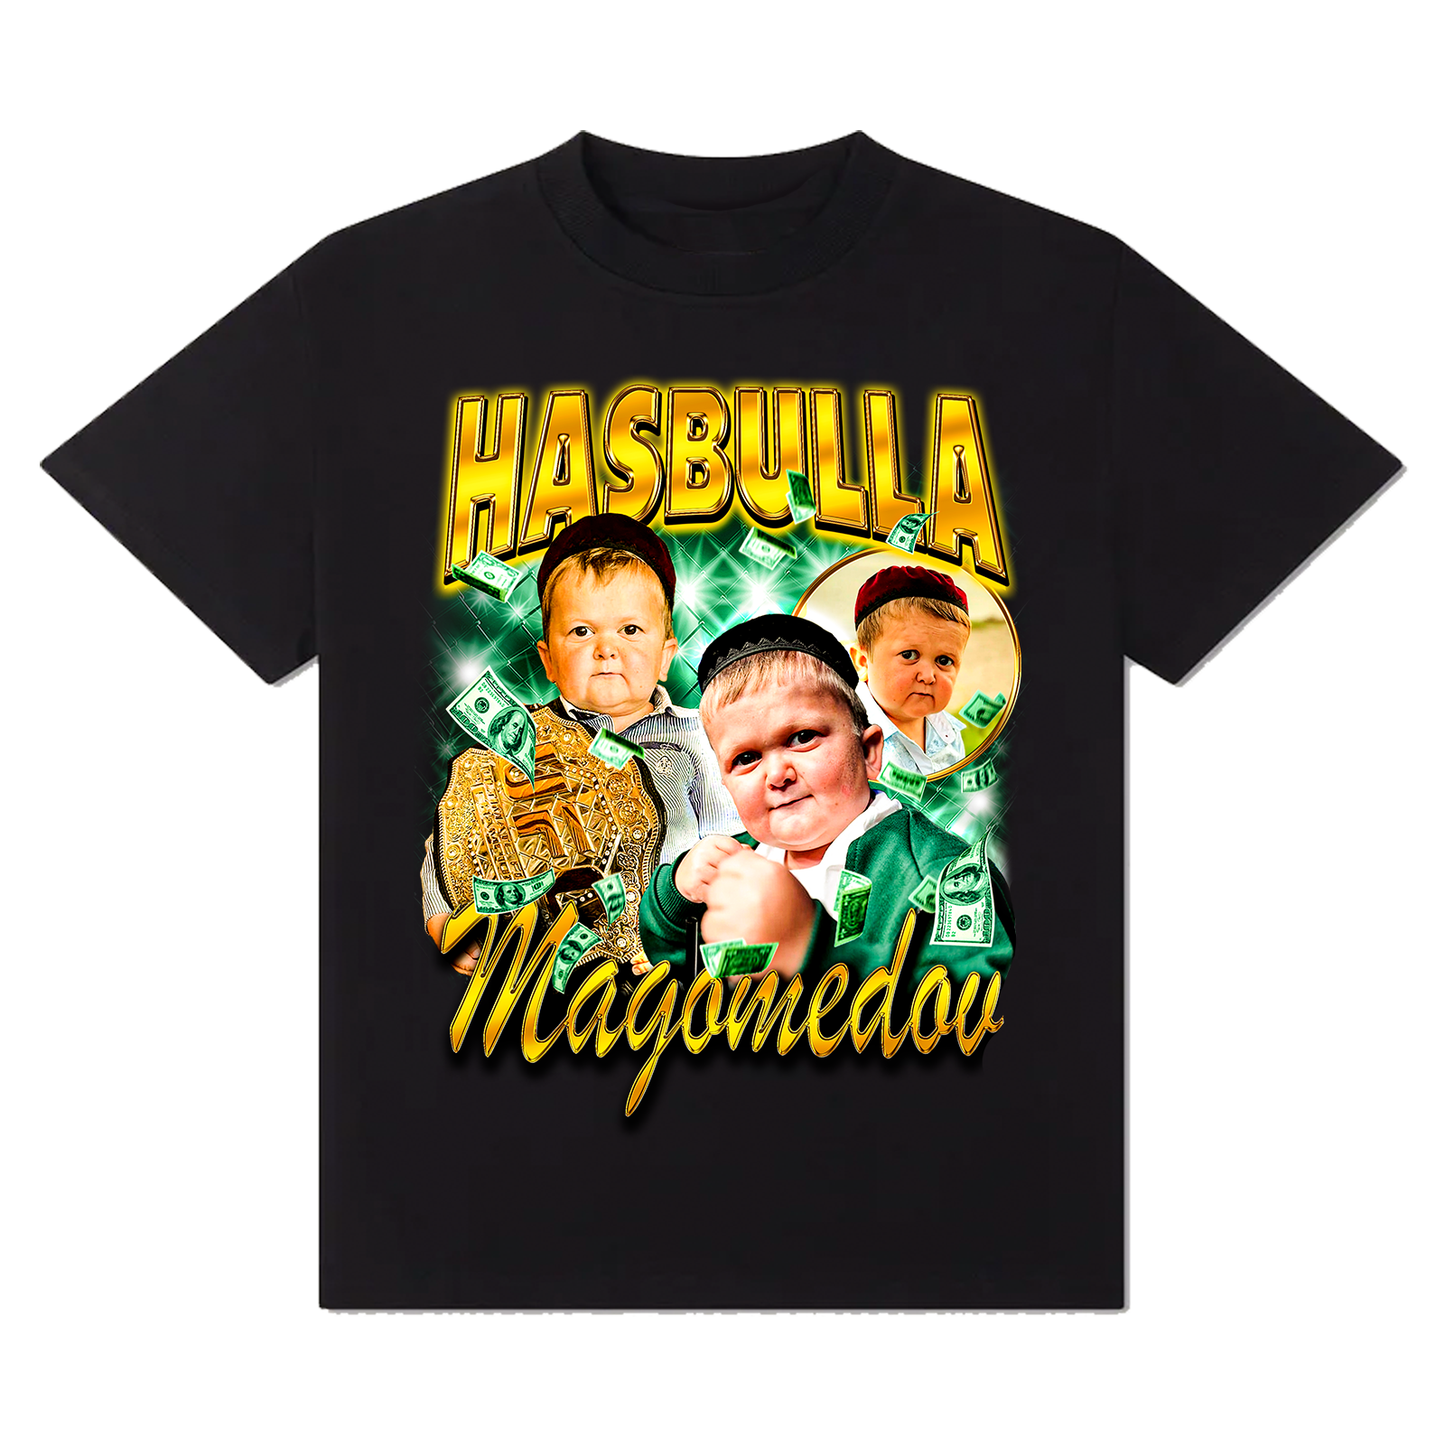 Hasbulla Magomedov T-Shirt!